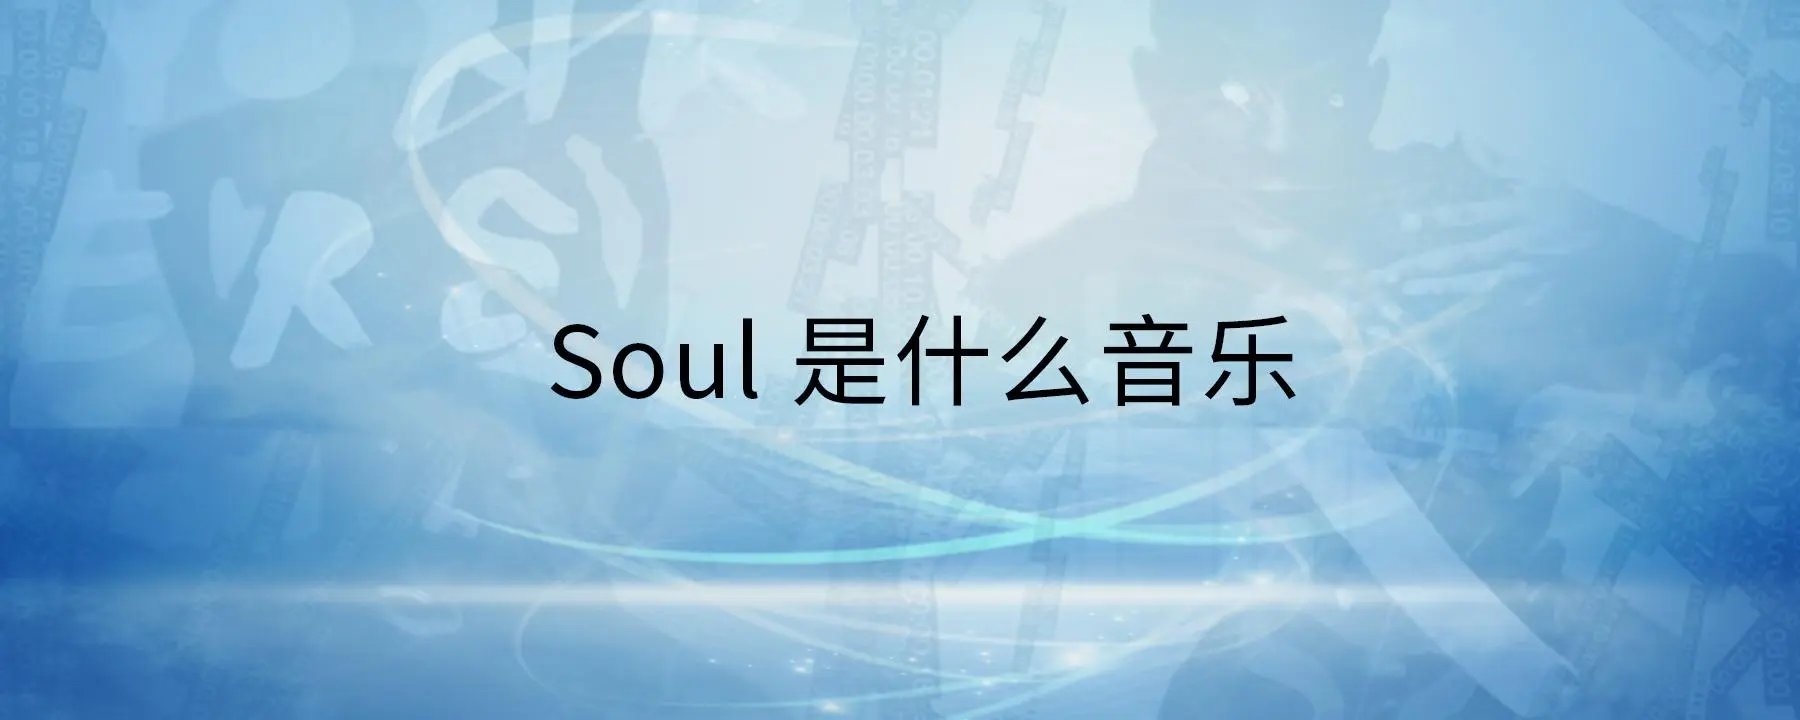 soul音app